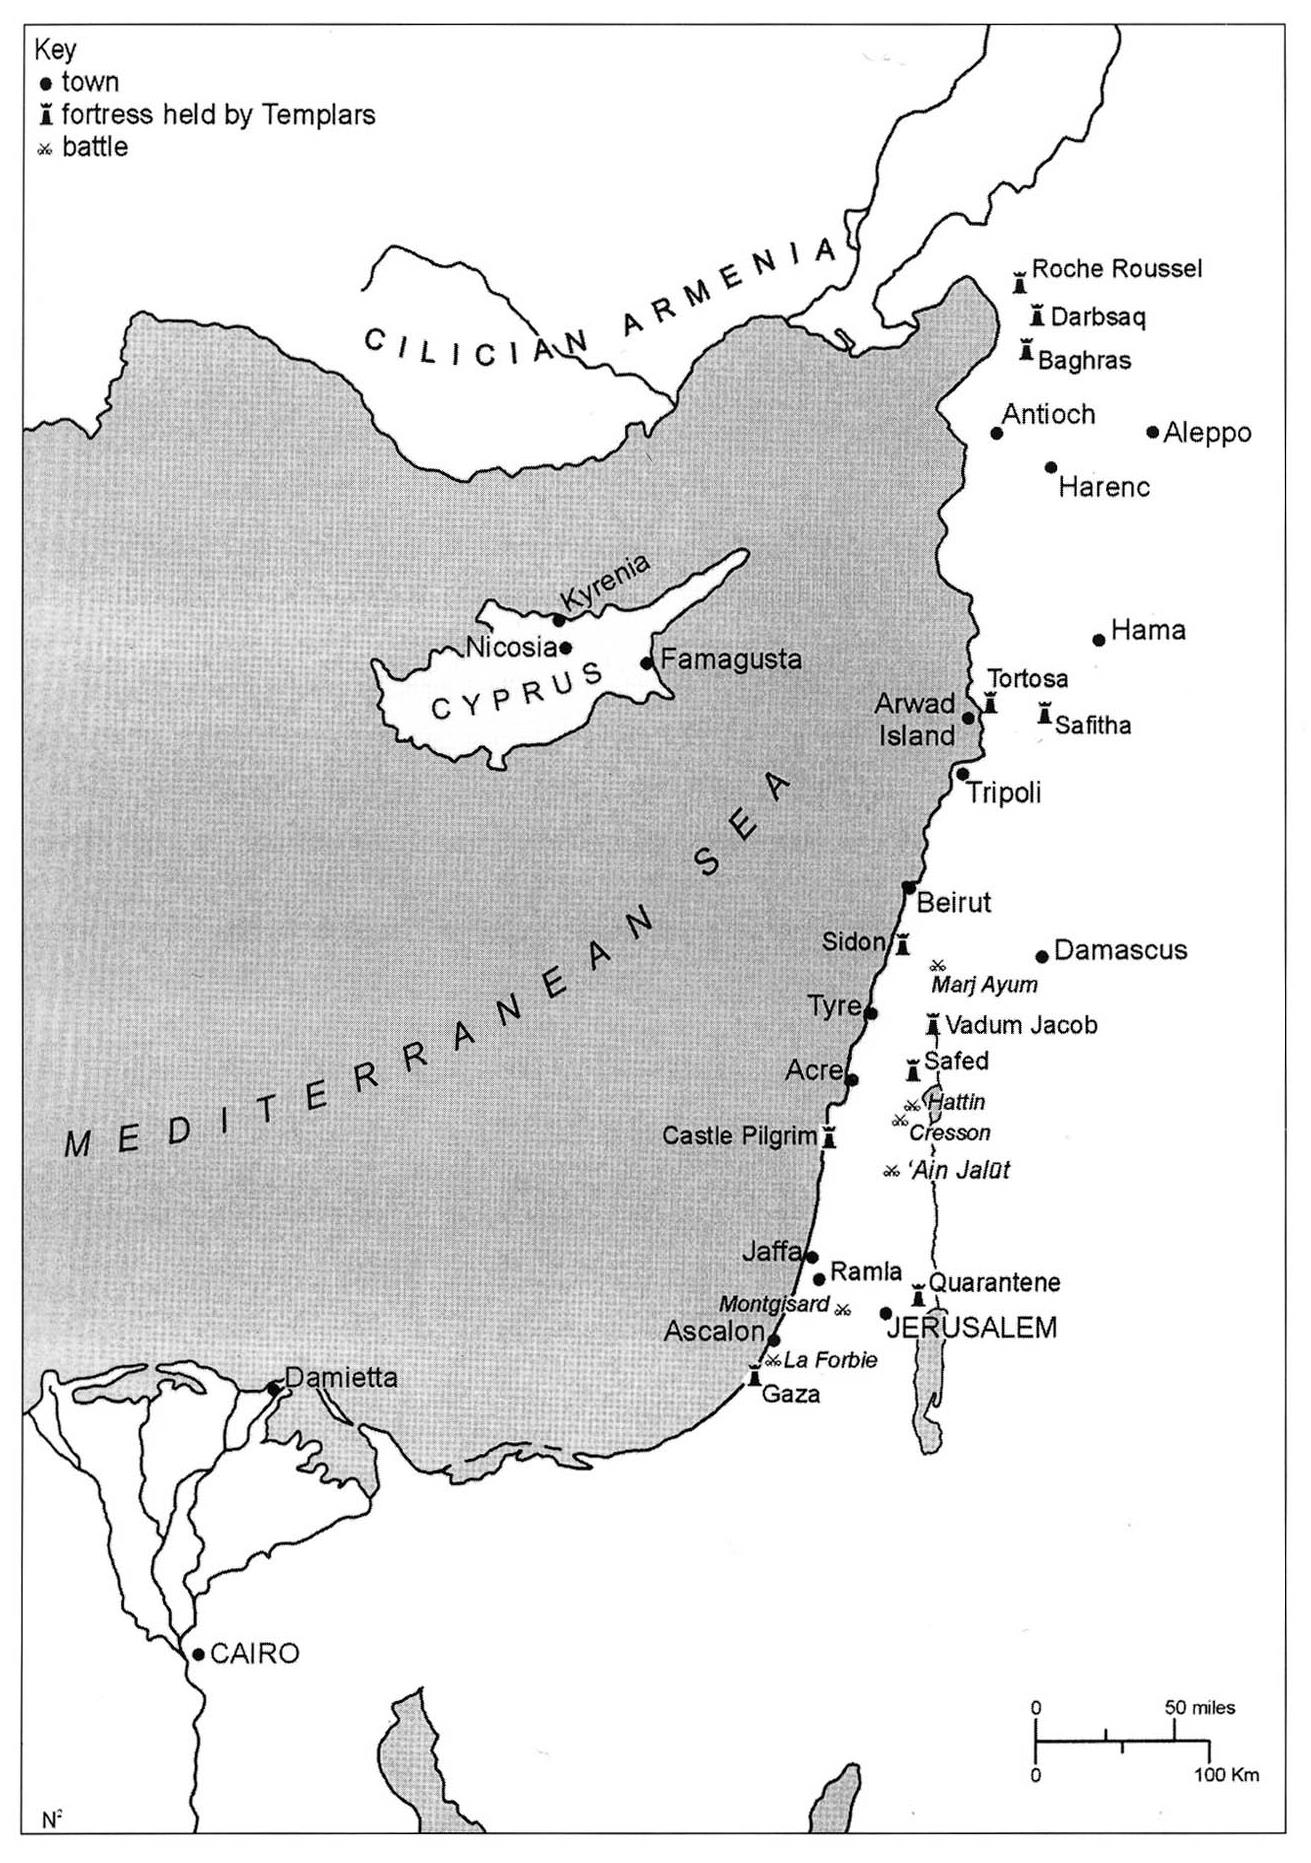 6. ΧΑΡΤΗΣ Χάρτης της παράκτιας ζώνης που κατακτήθηκε από τους σταυροφόρους κατά την Πρώτη Σταυροφορία και αργότερα, και